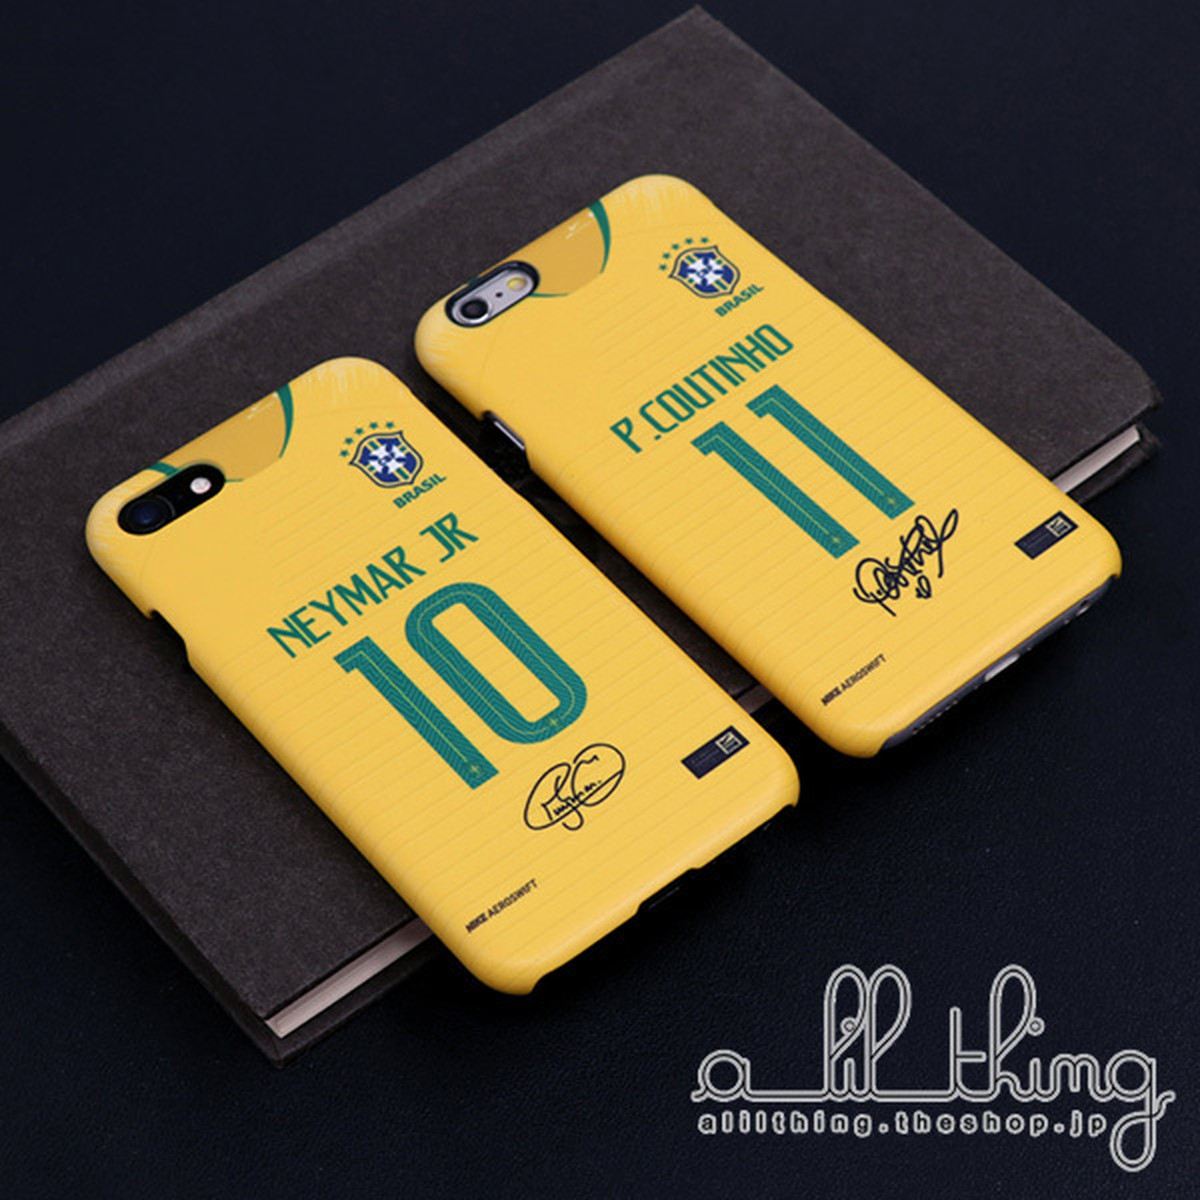 Wc18 ブラジル ロシアw杯 ワールドカップ ホームユニフォーム ネイマール サイン入り Iphonex Iphone8 ケース Alilthing